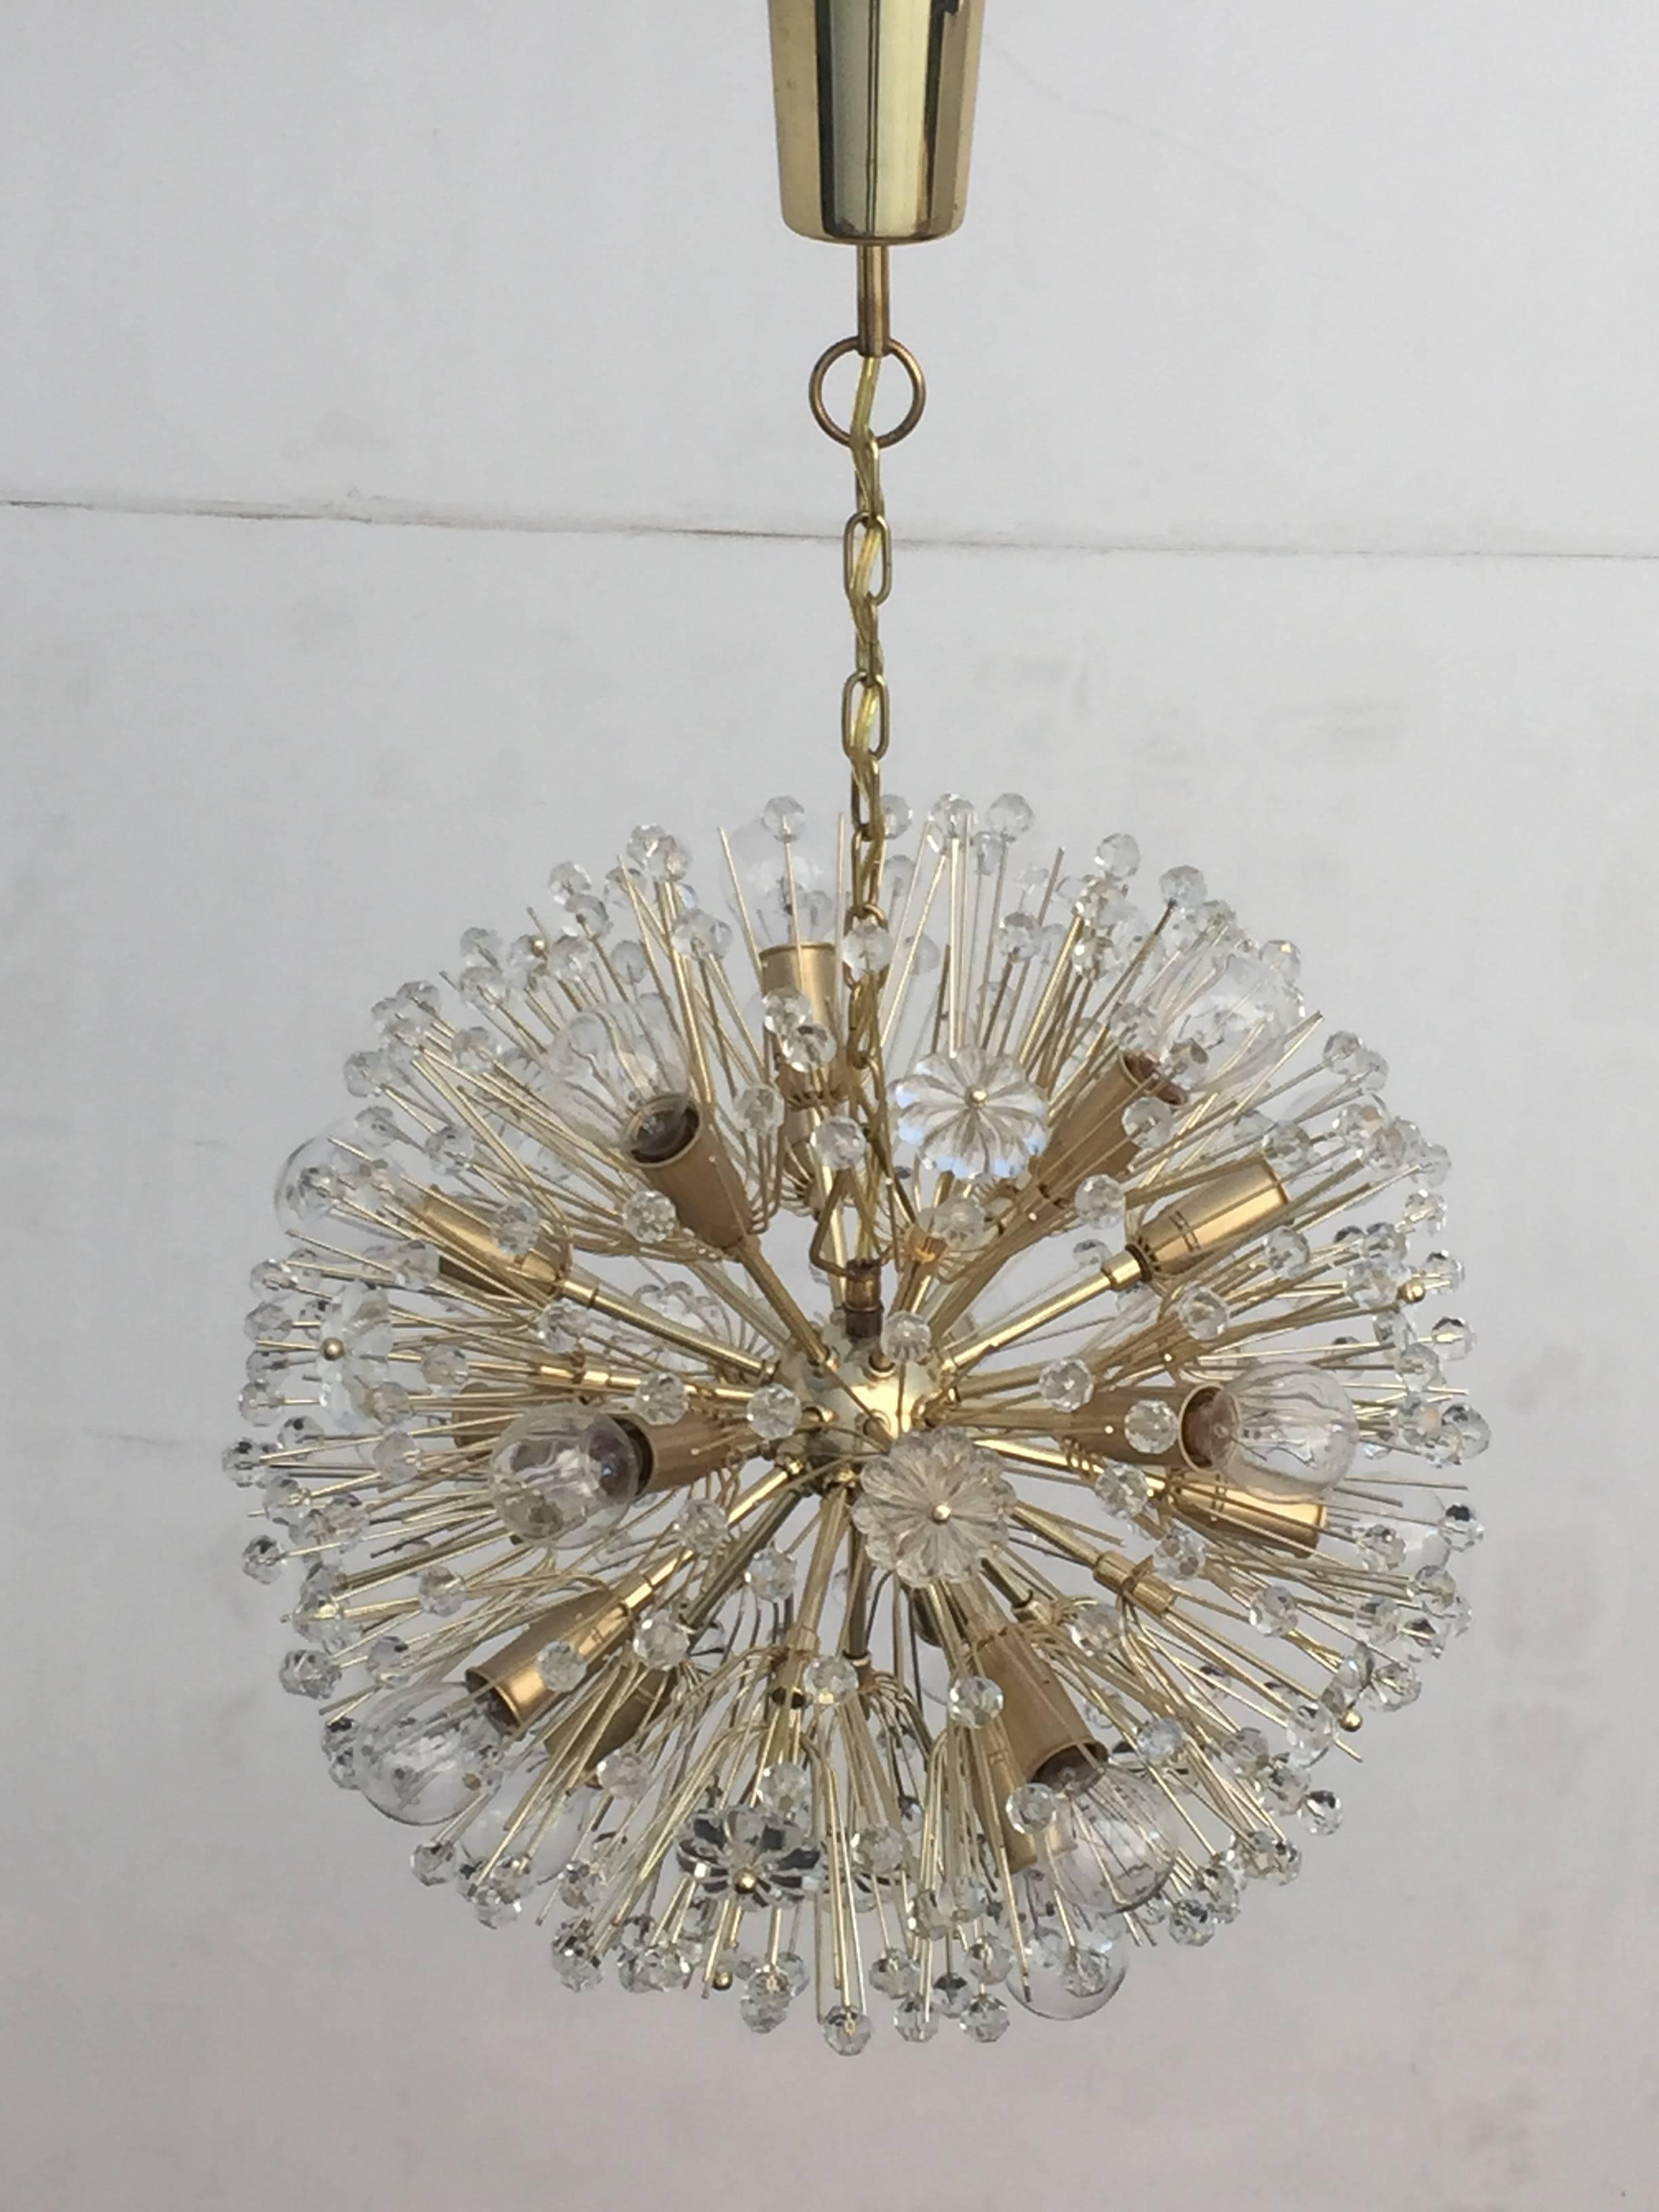 Emil Stejnar blow ball Sputnik chandelier.
Completely restored condition.